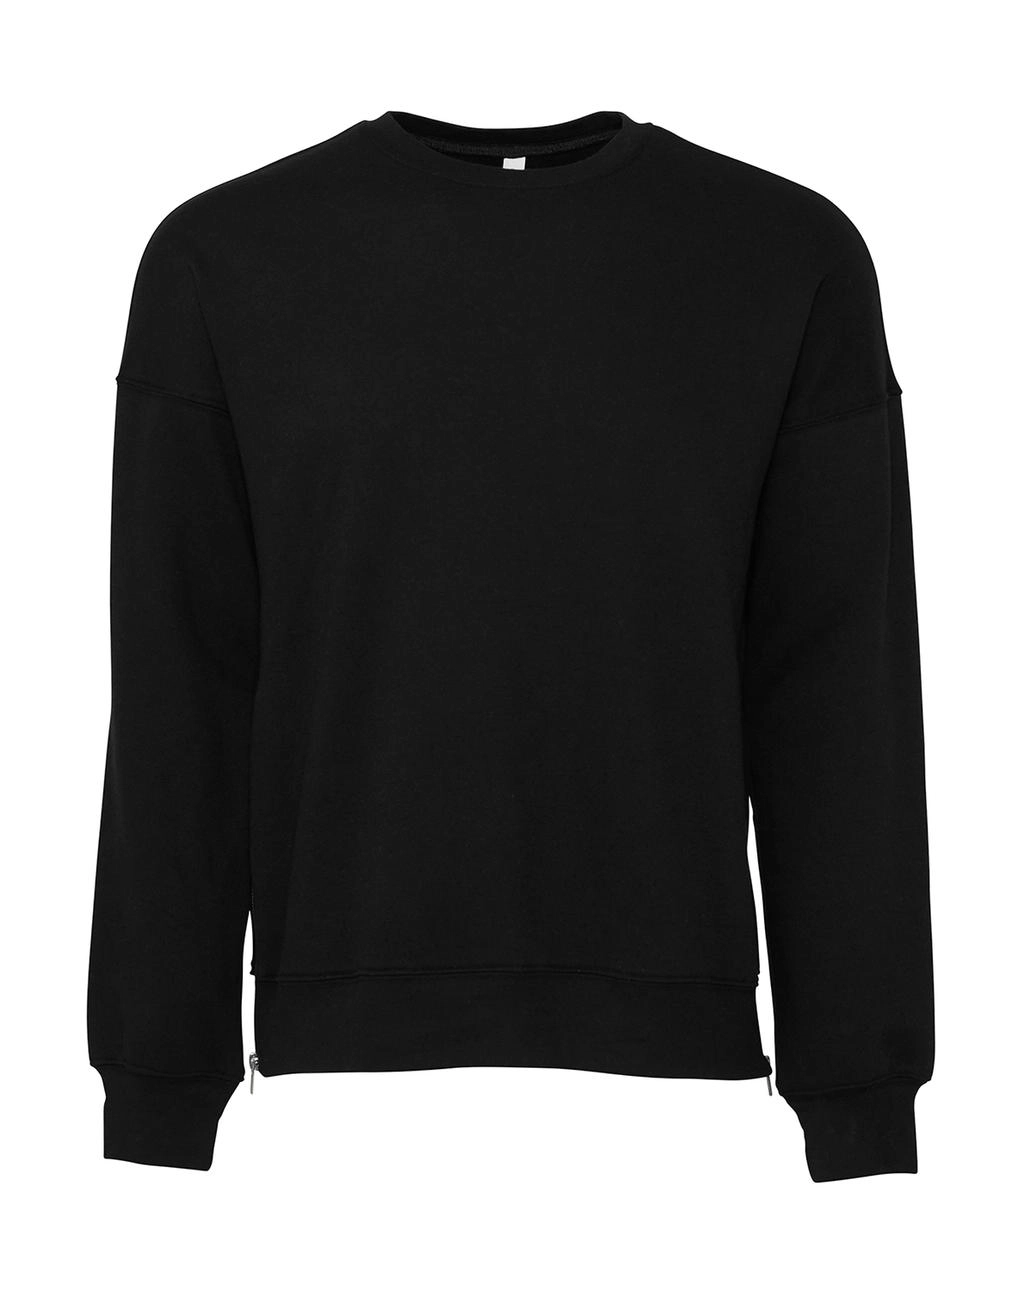 Unisex Drop Shoulder Fleece zum Besticken und Bedrucken in der Farbe DTG Black mit Ihren Logo, Schriftzug oder Motiv.